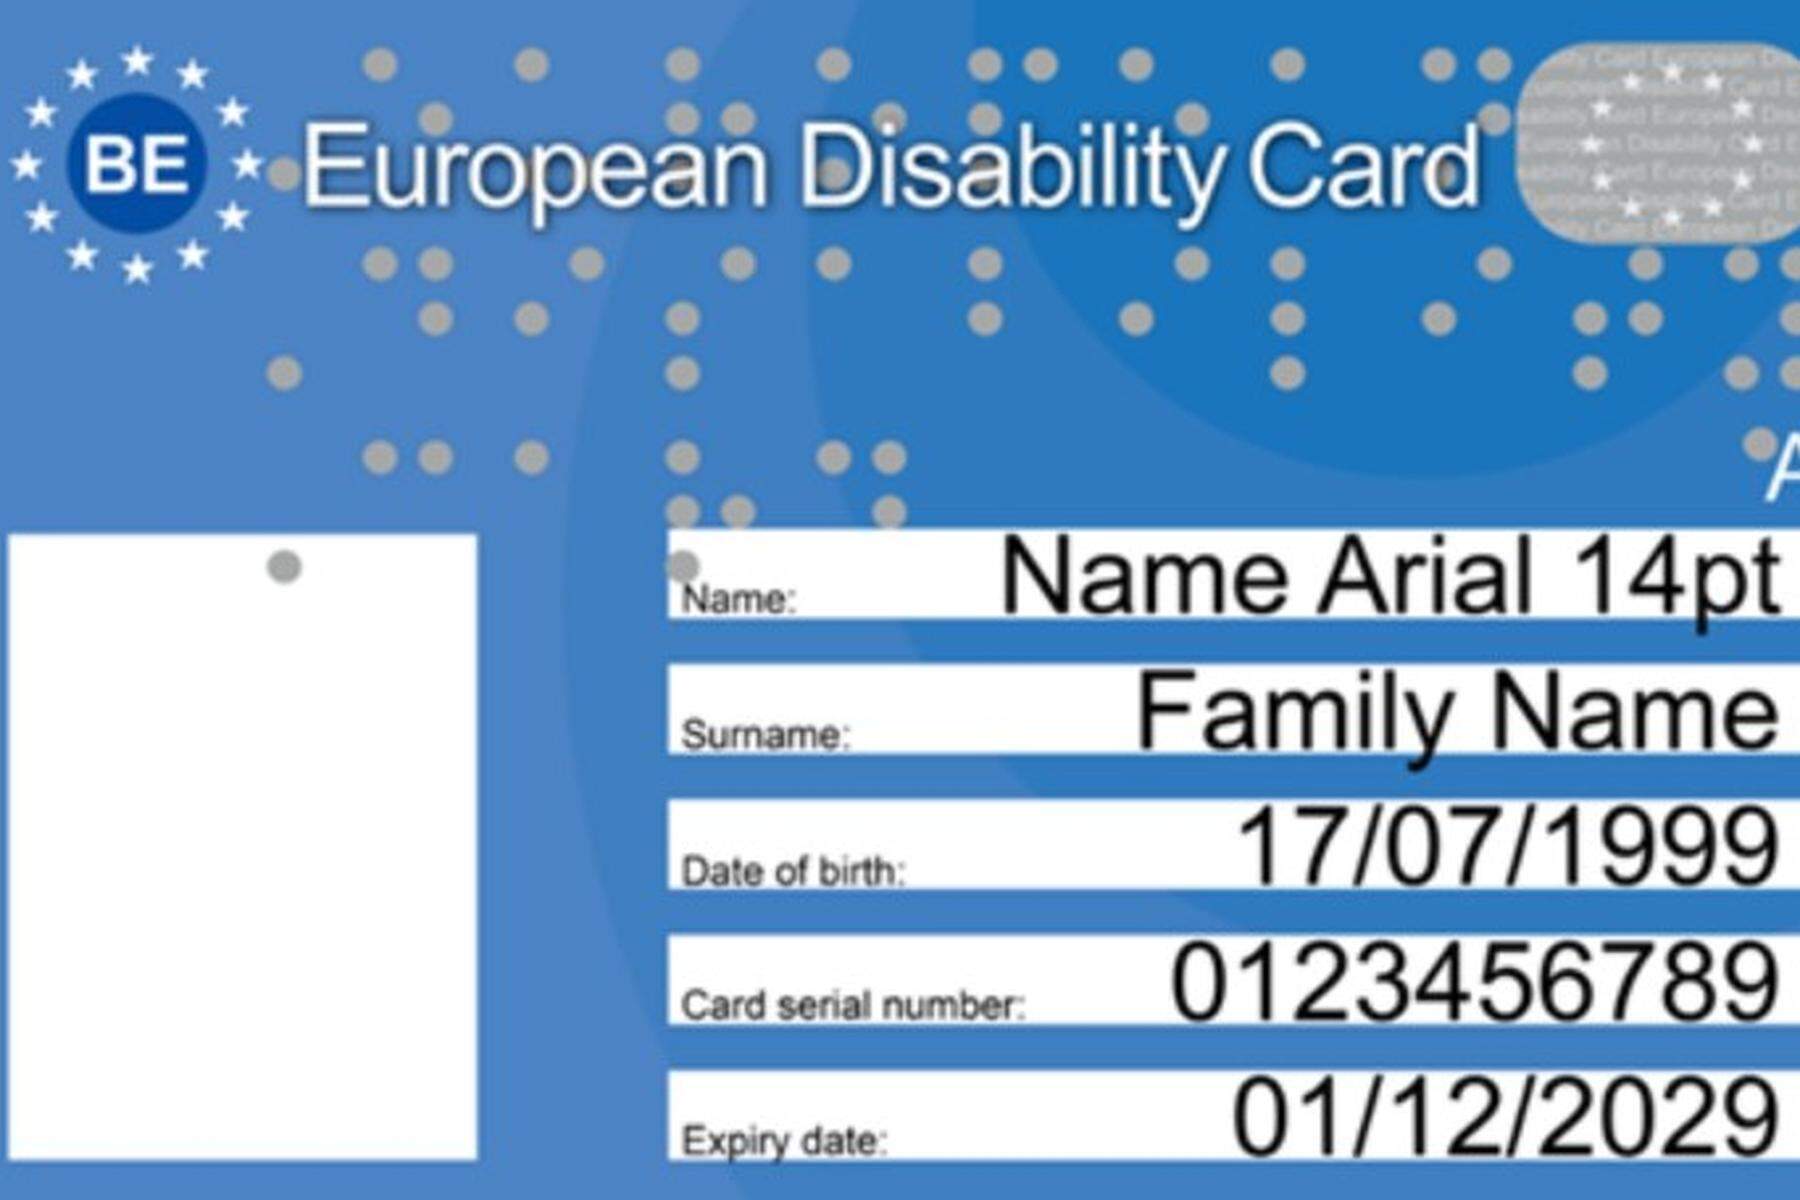 Brüssel | Jetzt kommt der EU-weite Ausweis für Behinderte